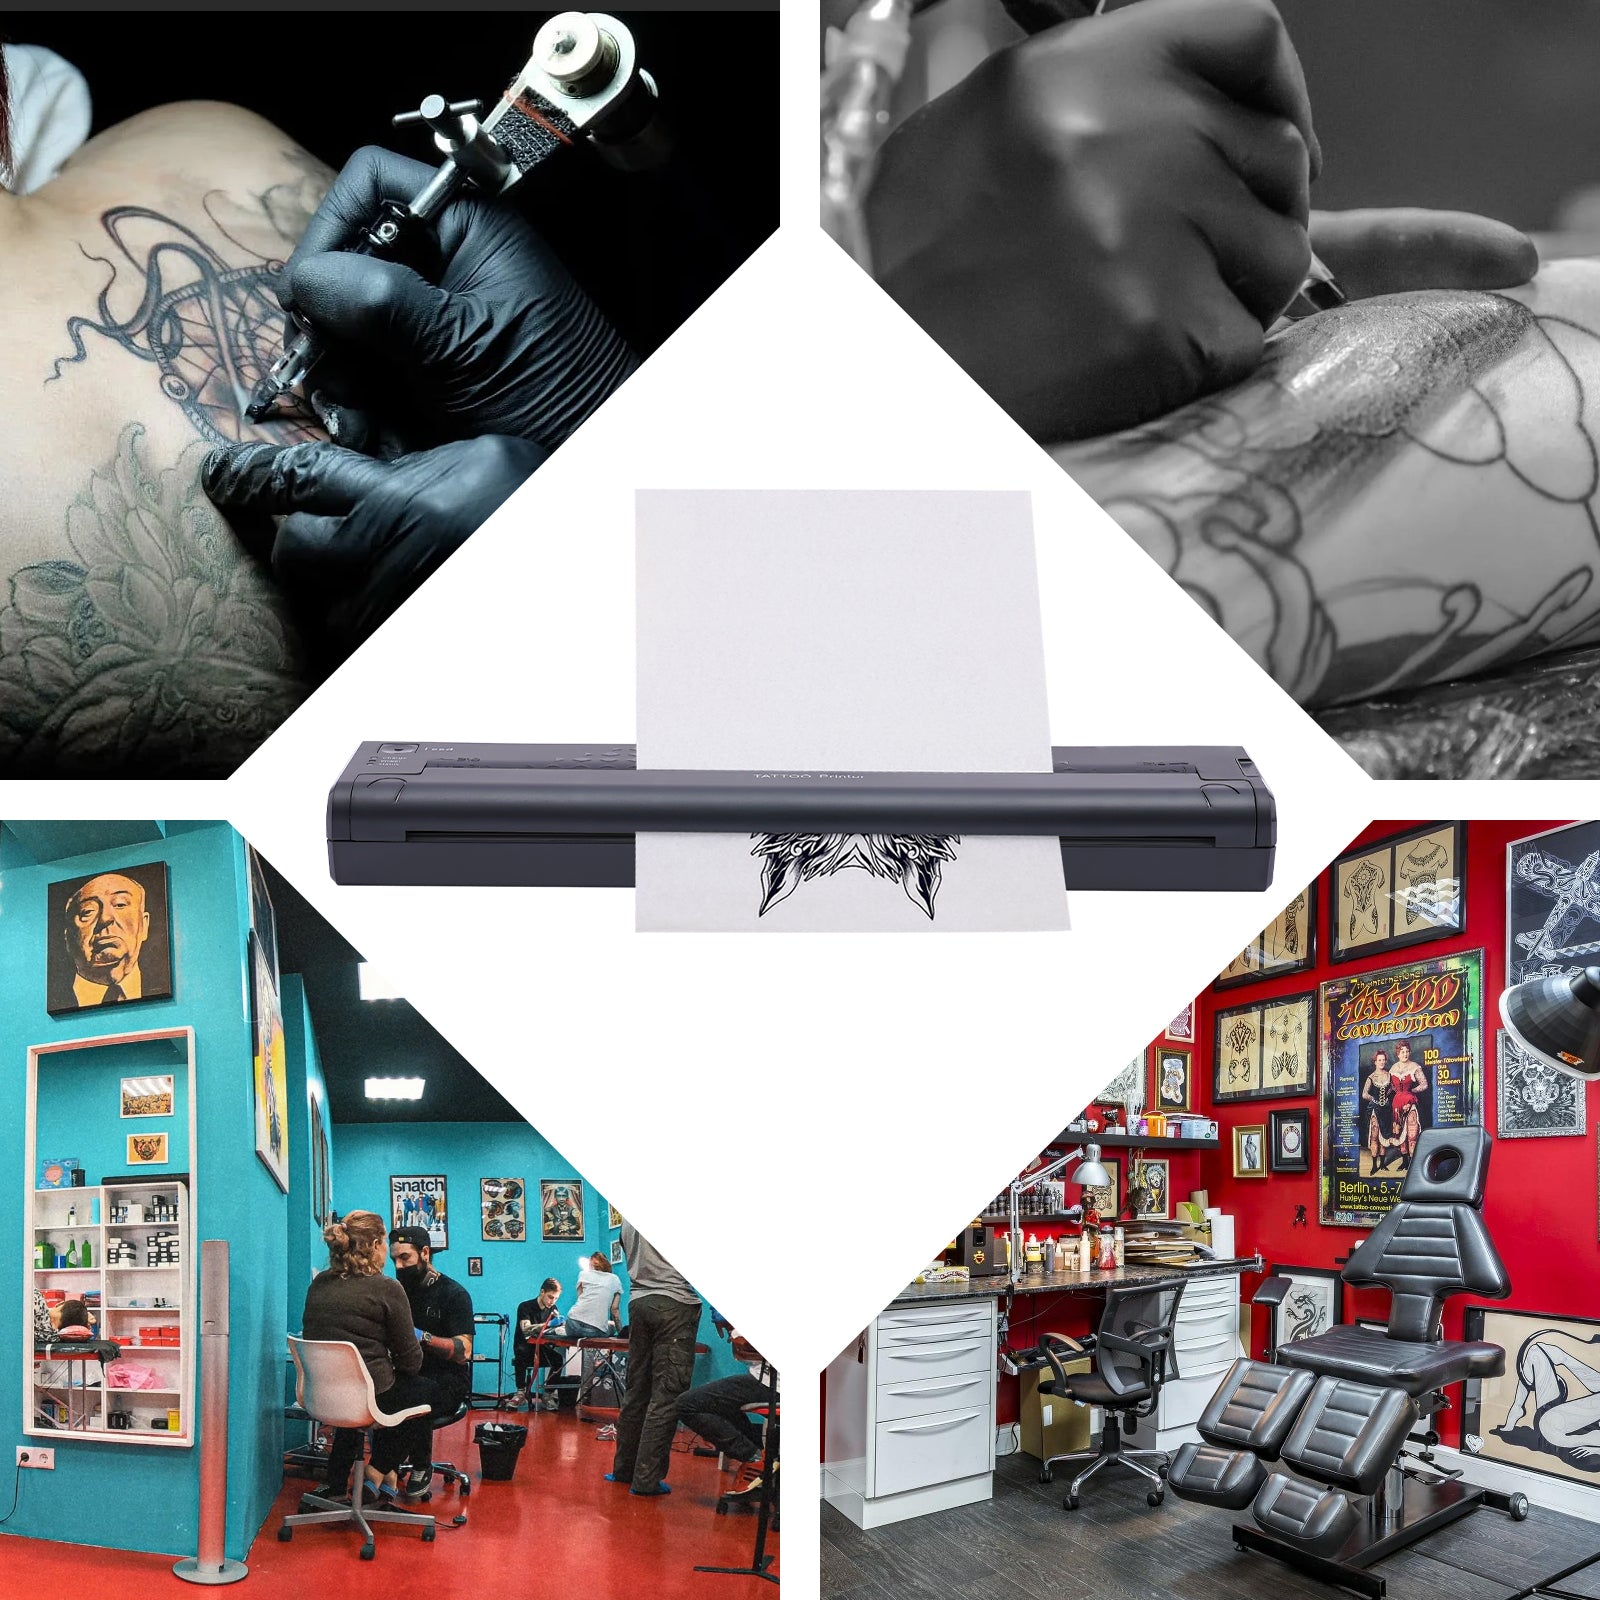 Thermal Printer Mini Portable Tattoo Transfer Macchina per documenti, USB, colore nero, per auto, ufficio, casa